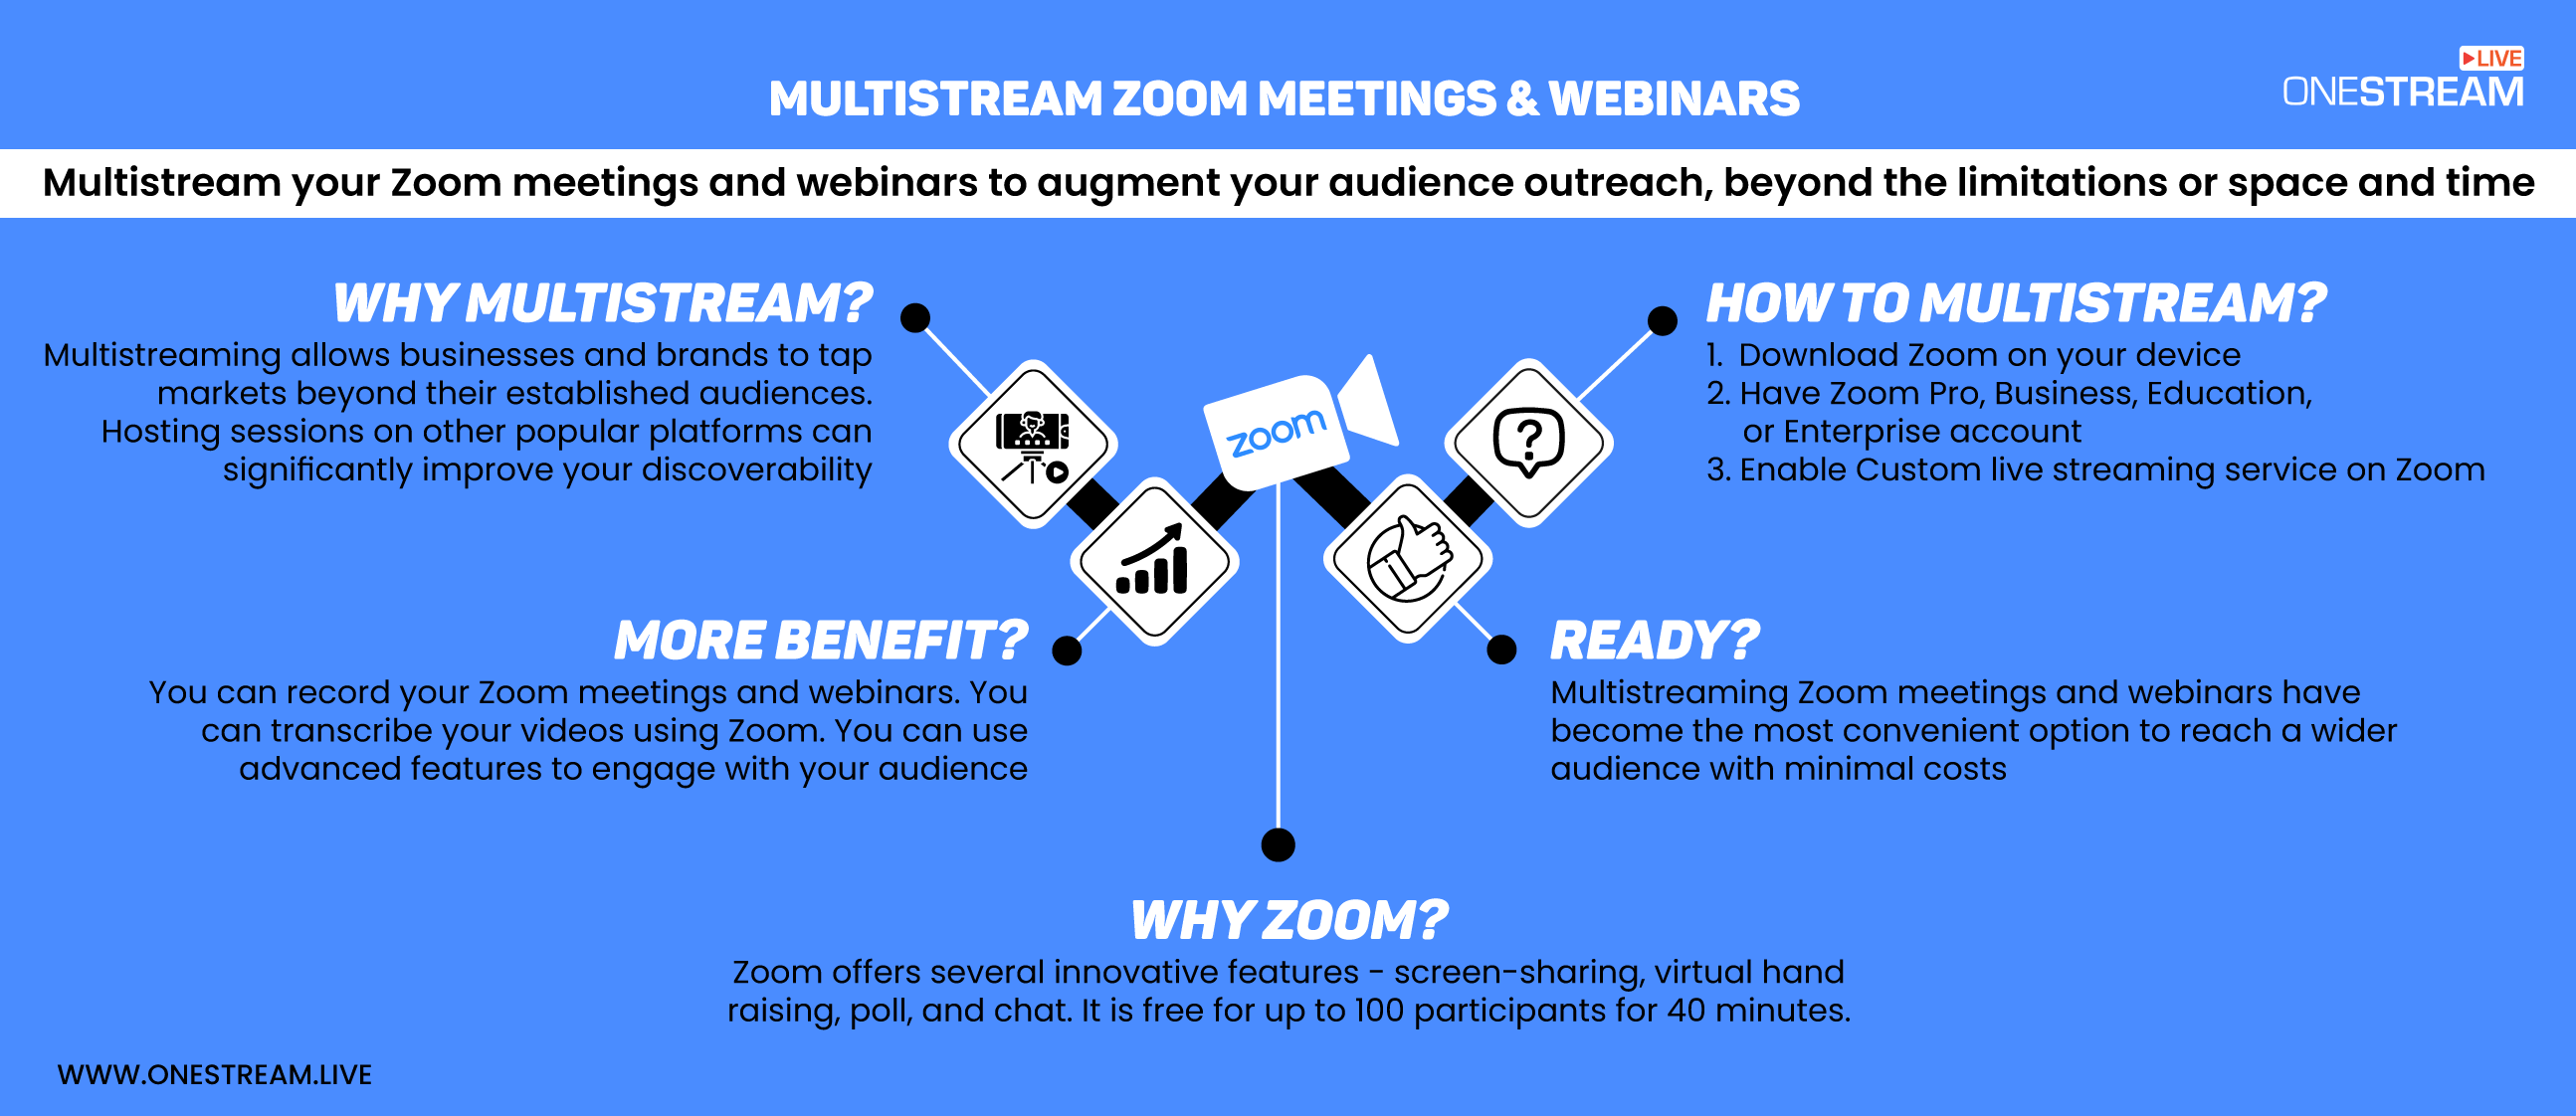 Why multistream zoom webinars and meetings